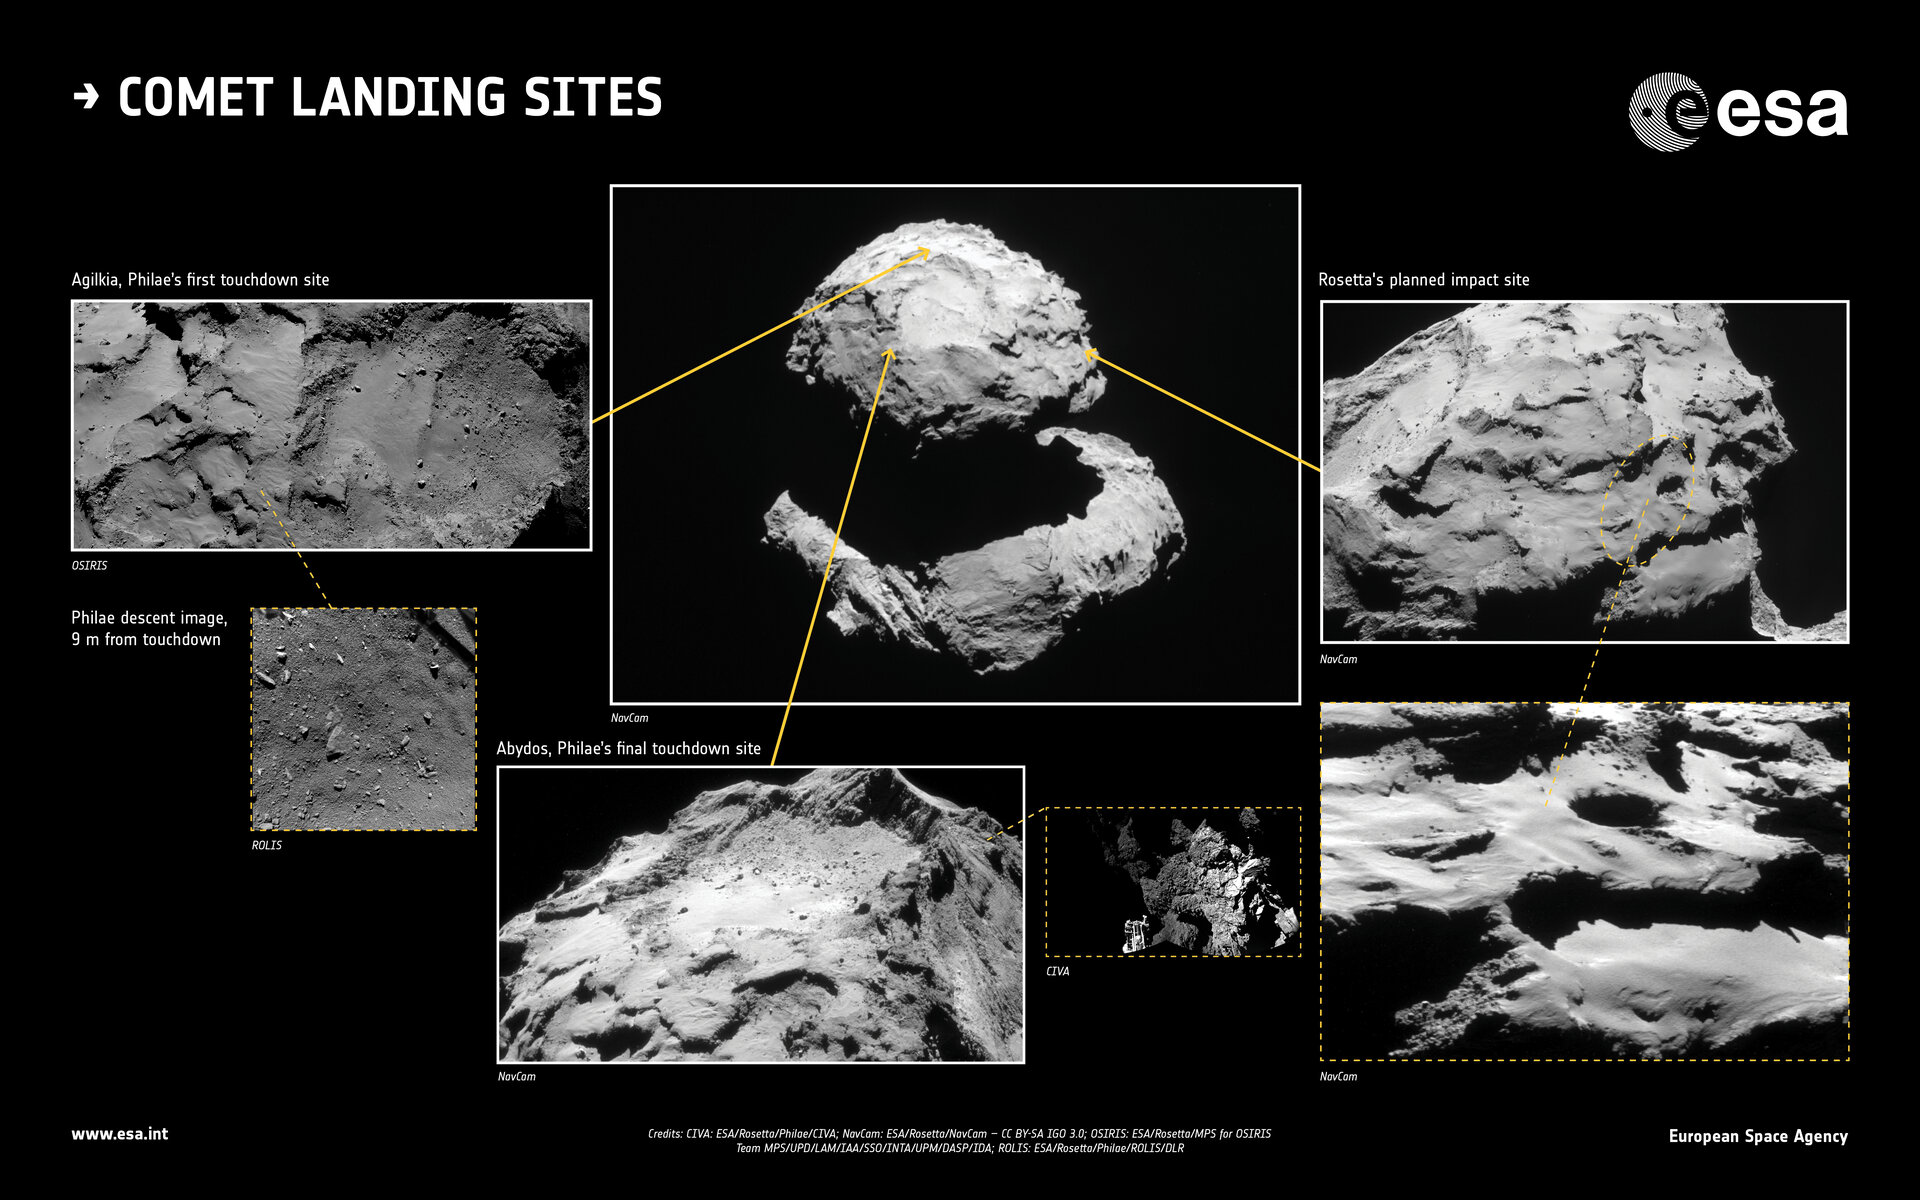 Comet landing sites in context